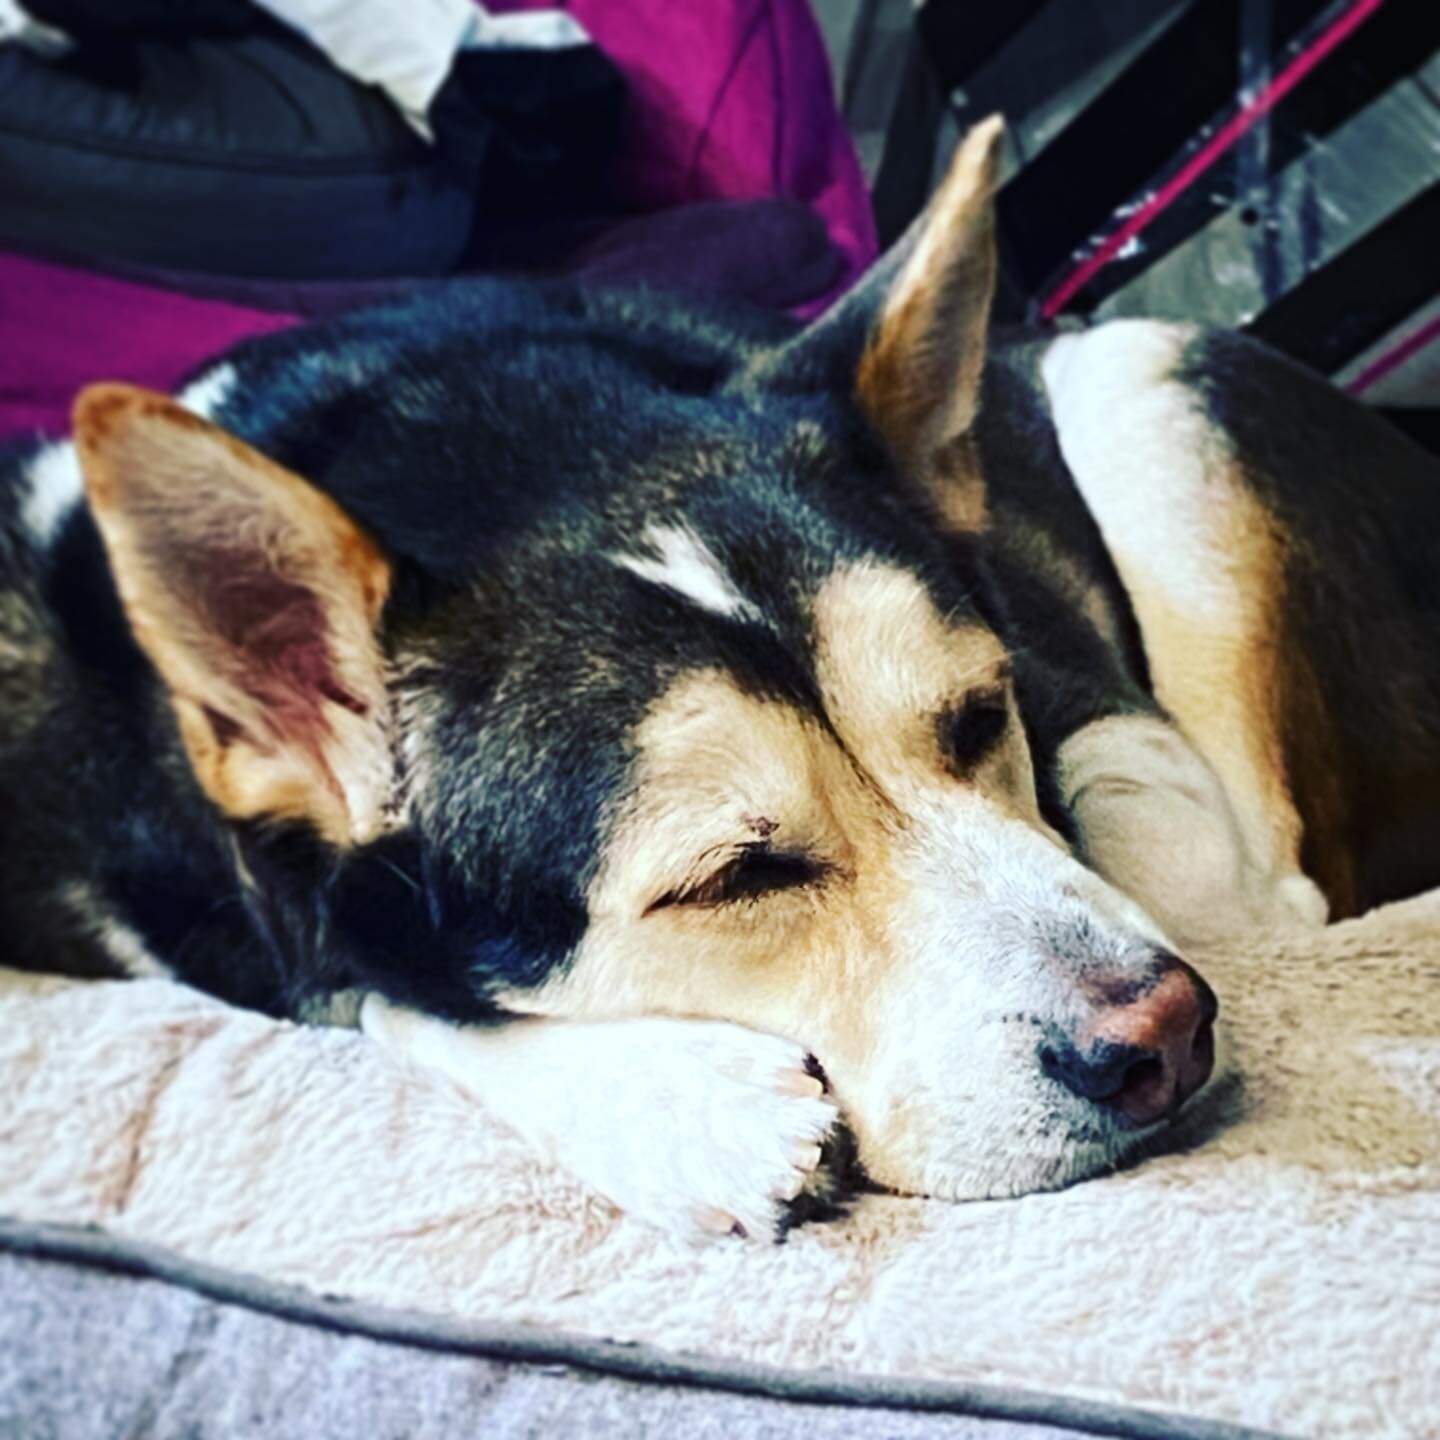 Sleeping Buddy... 

#socute #sleepingbuddy #buddythedog #buddythelovedog #sleepingdog #rescuedogsofinstagram #shepsky #huskymix #huskyshepherd #mybuddy